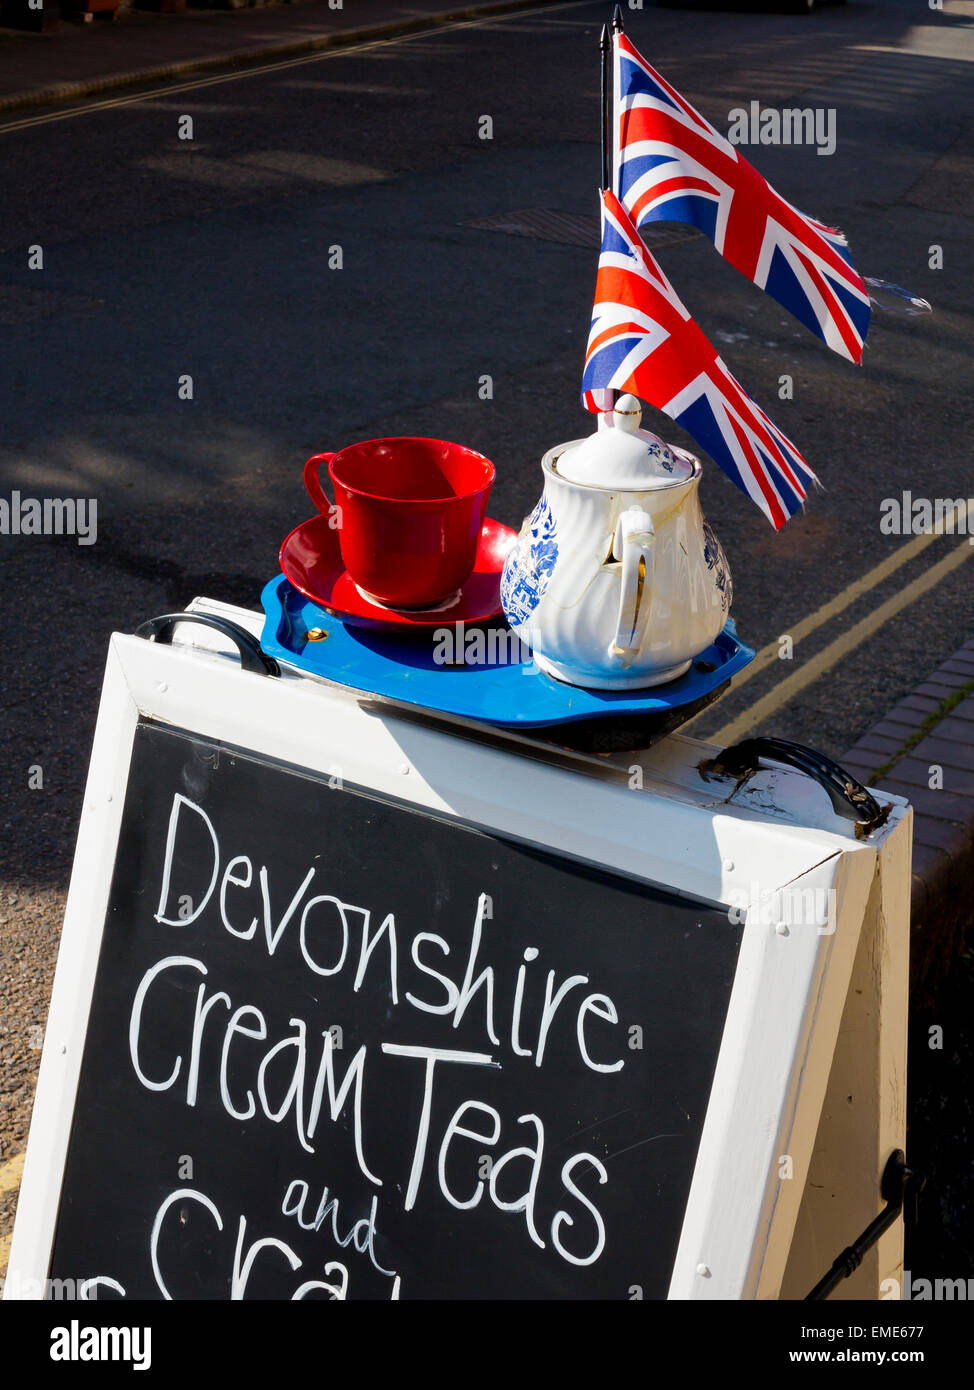 Sandwichbrett Zeichen Werbung Devonshire Cream Teas mit einem Tablett mit einer Tasse, Untertasse, Teekanne und Union Jack-Flaggen an der Spitze Stockfoto